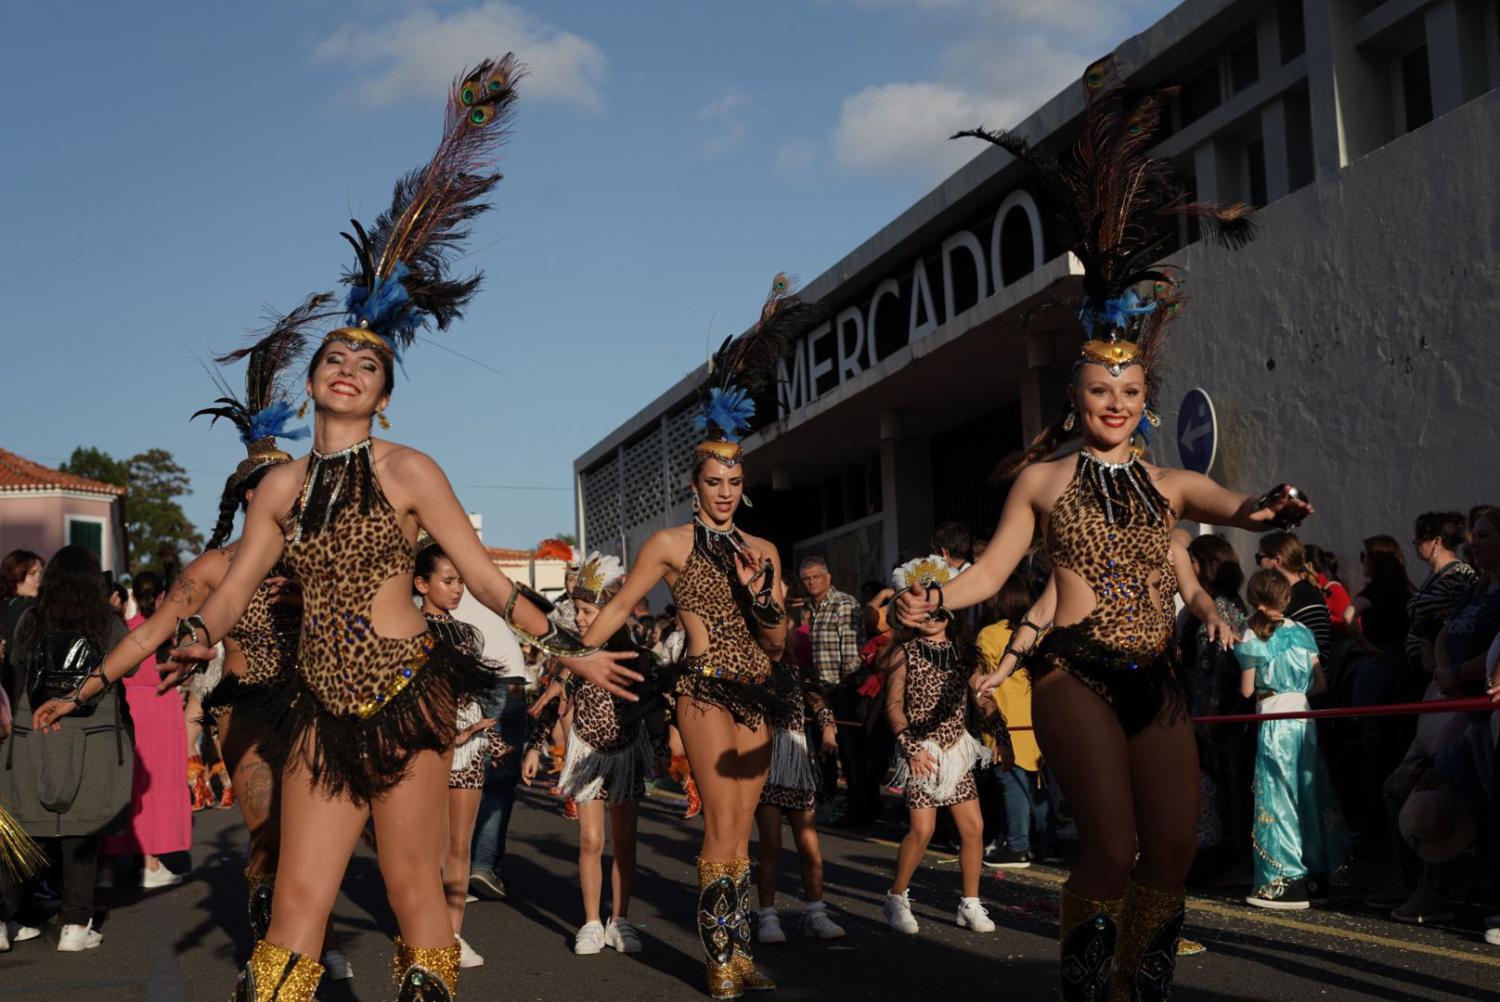 Magia do Carnaval vivida em Santa Cruz (com fotos)